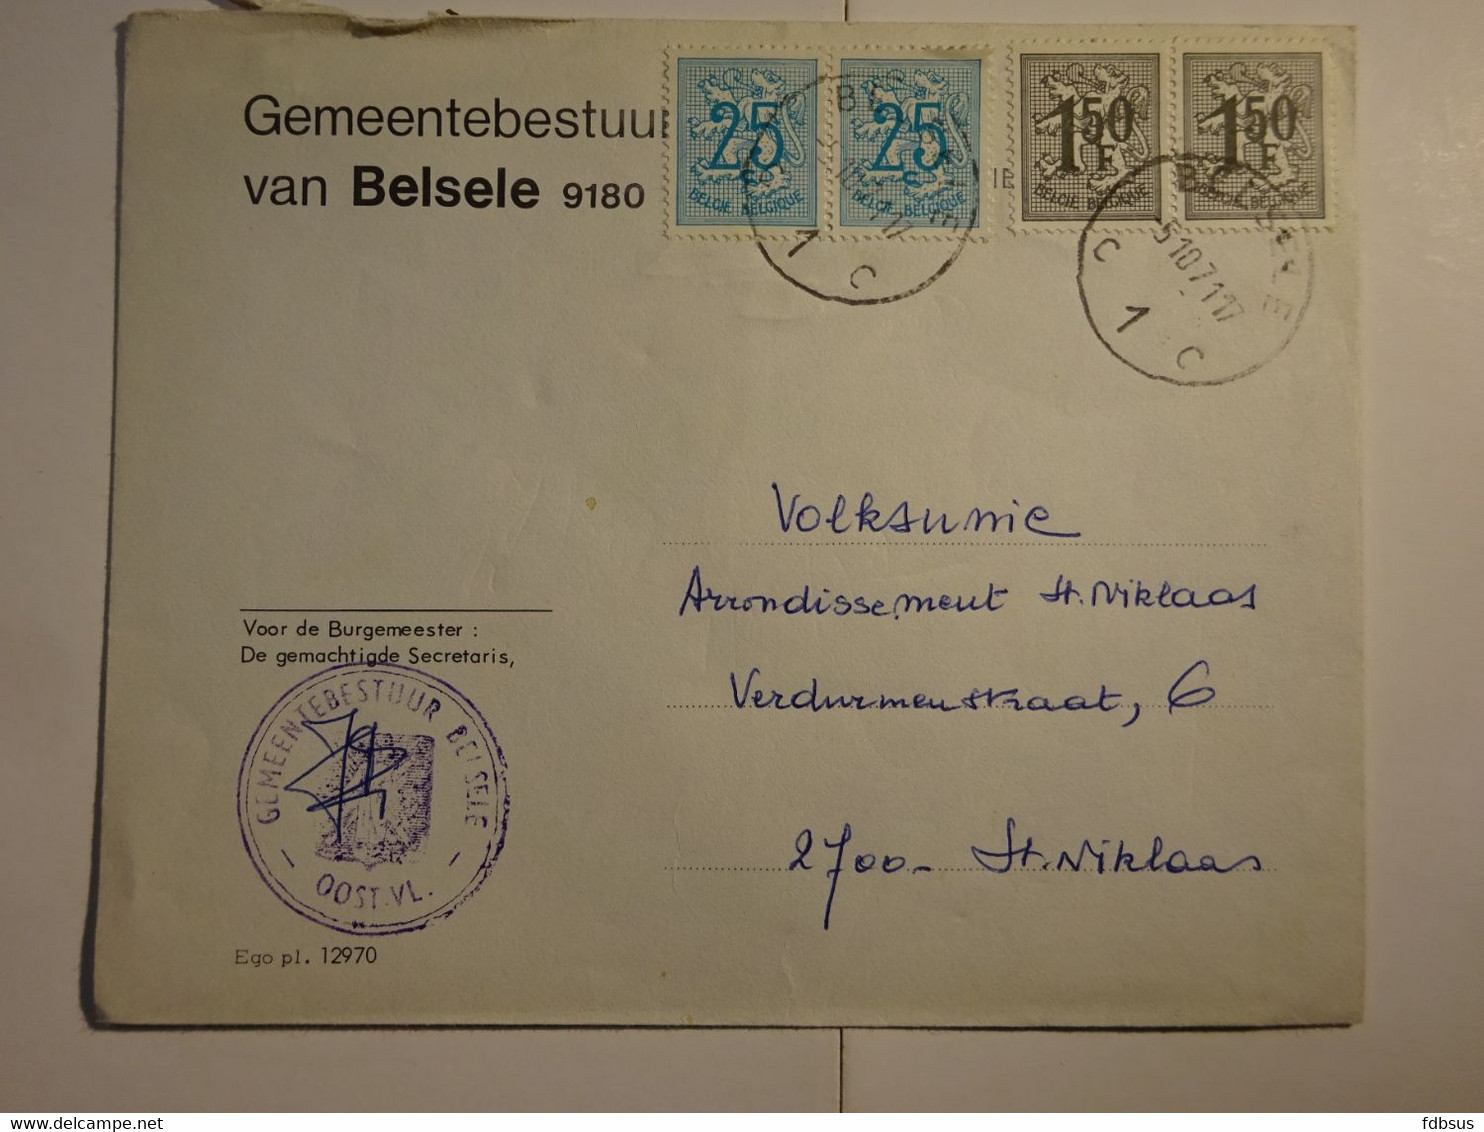 1971 Enveloppe Gemeentebestuur 9180 BELSELE Gefr. 2 X 25c + 2 X 1.50Fr - Zie Scan (s) Voor Zegels, Stempels En Andere - 1977-1985 Chiffre Sur Lion